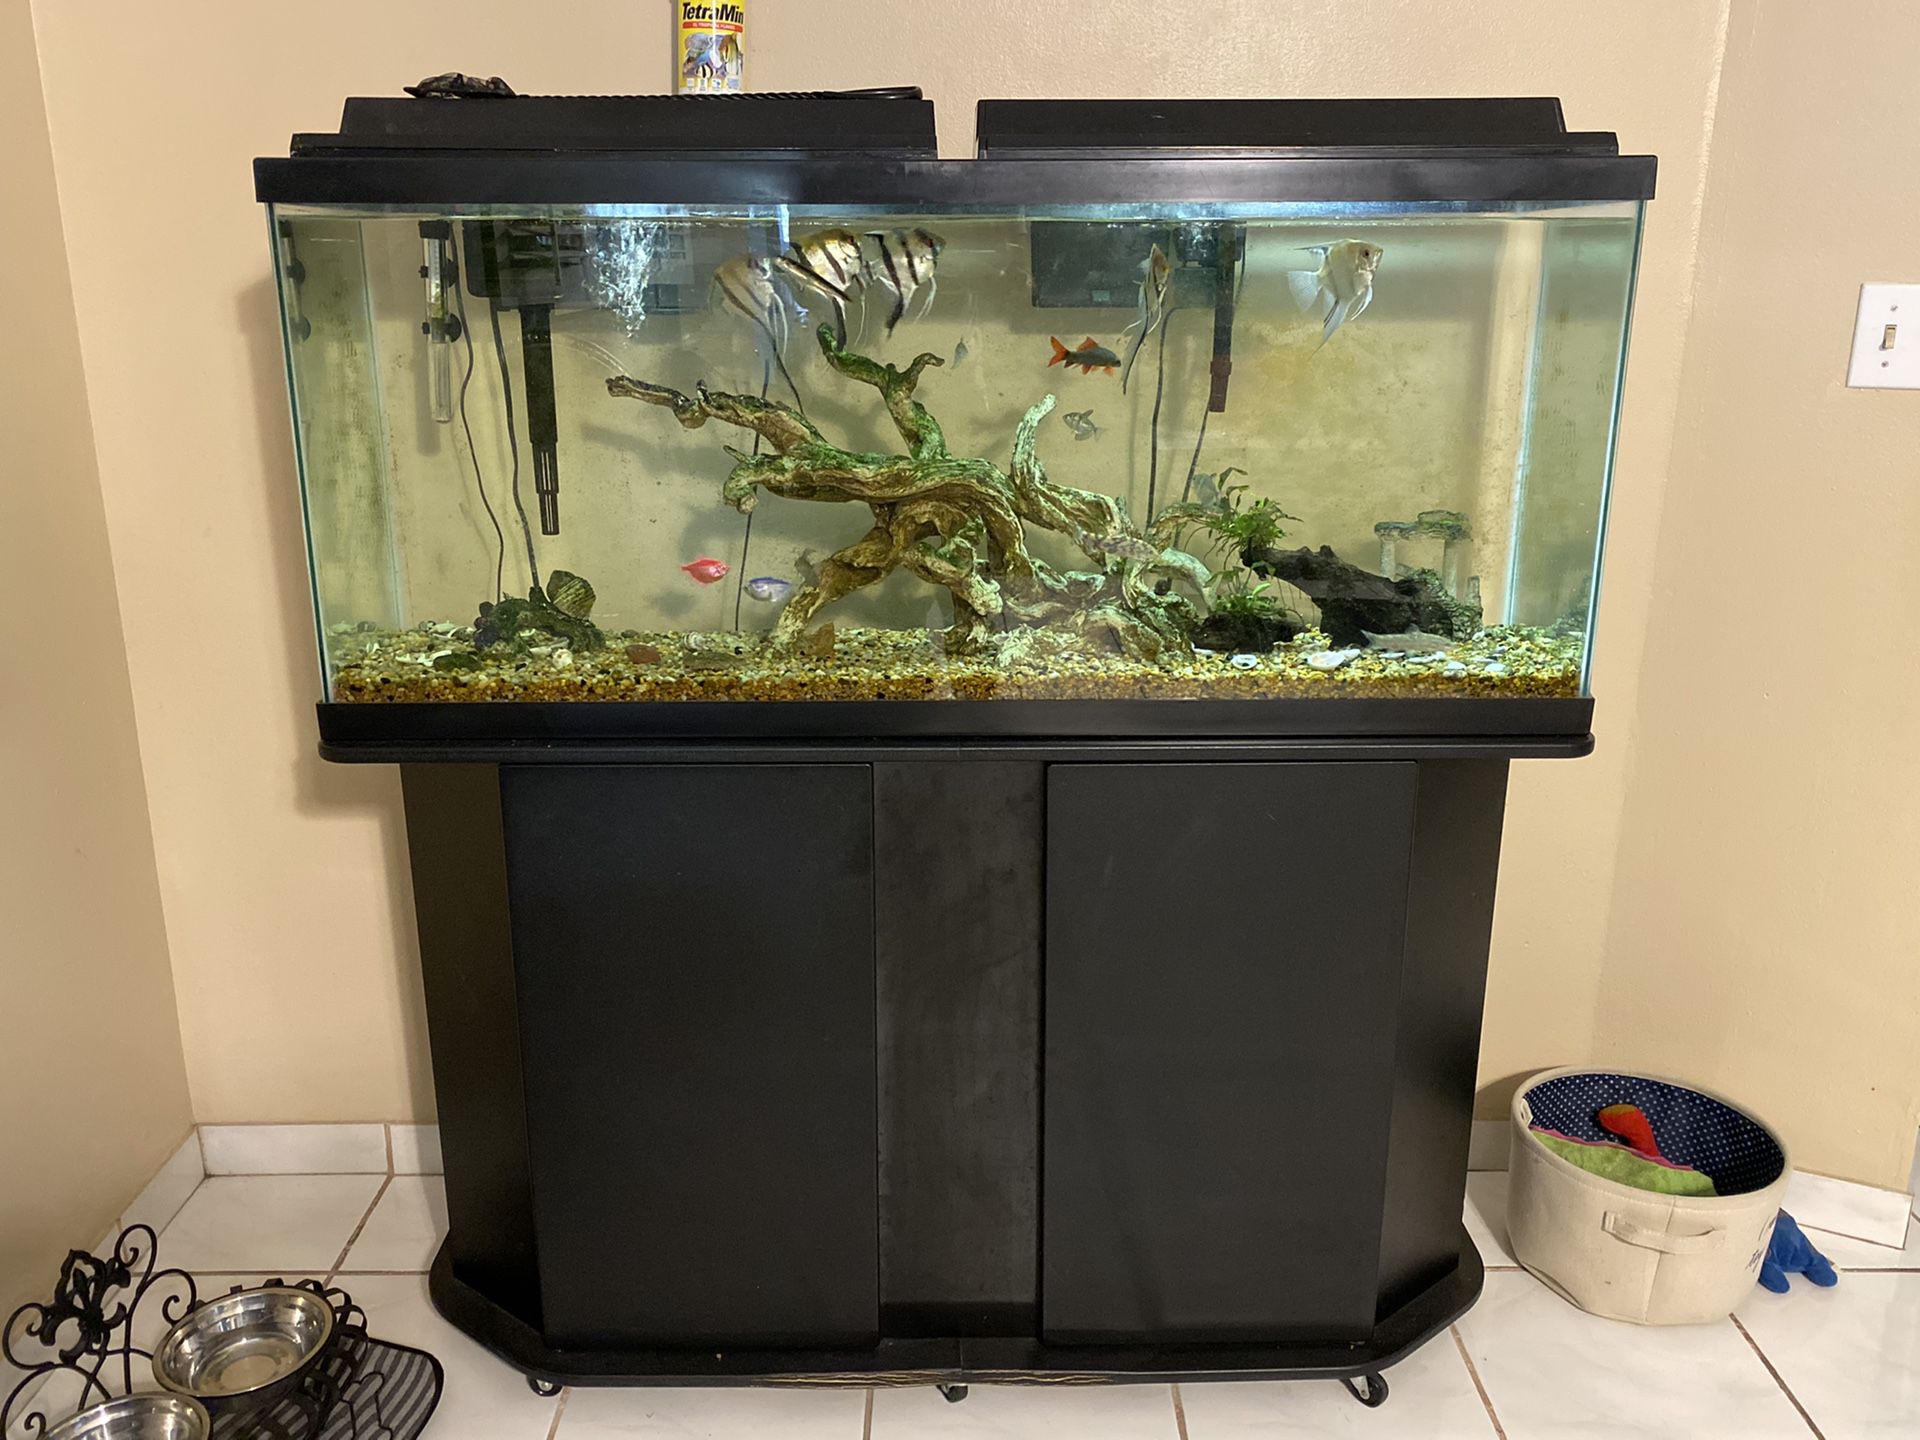 55 gallon freshwater aquarium with equipment